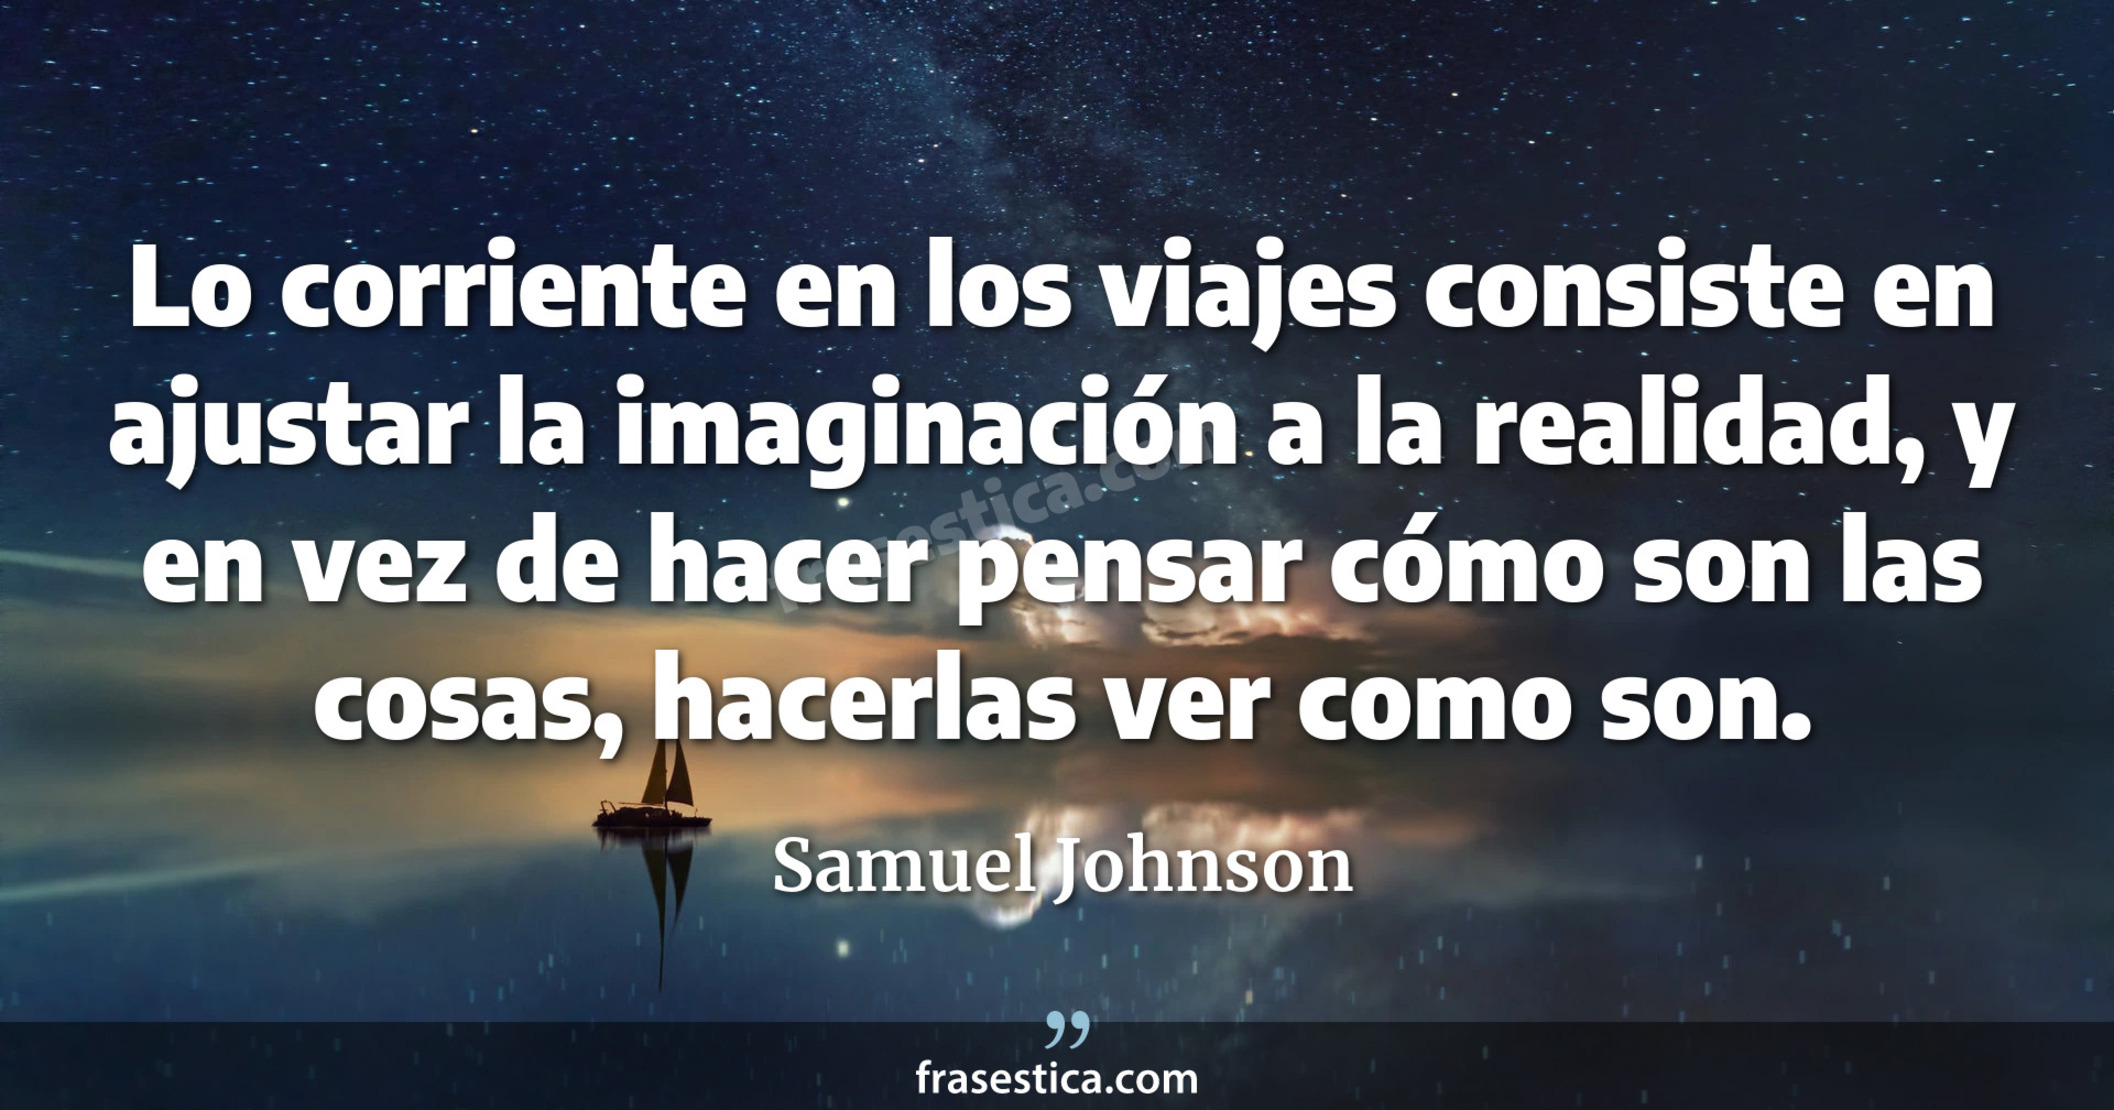 Lo corriente en los viajes consiste en ajustar la imaginación a la realidad, y en vez de hacer pensar cómo son las cosas, hacerlas ver como son. - Samuel Johnson